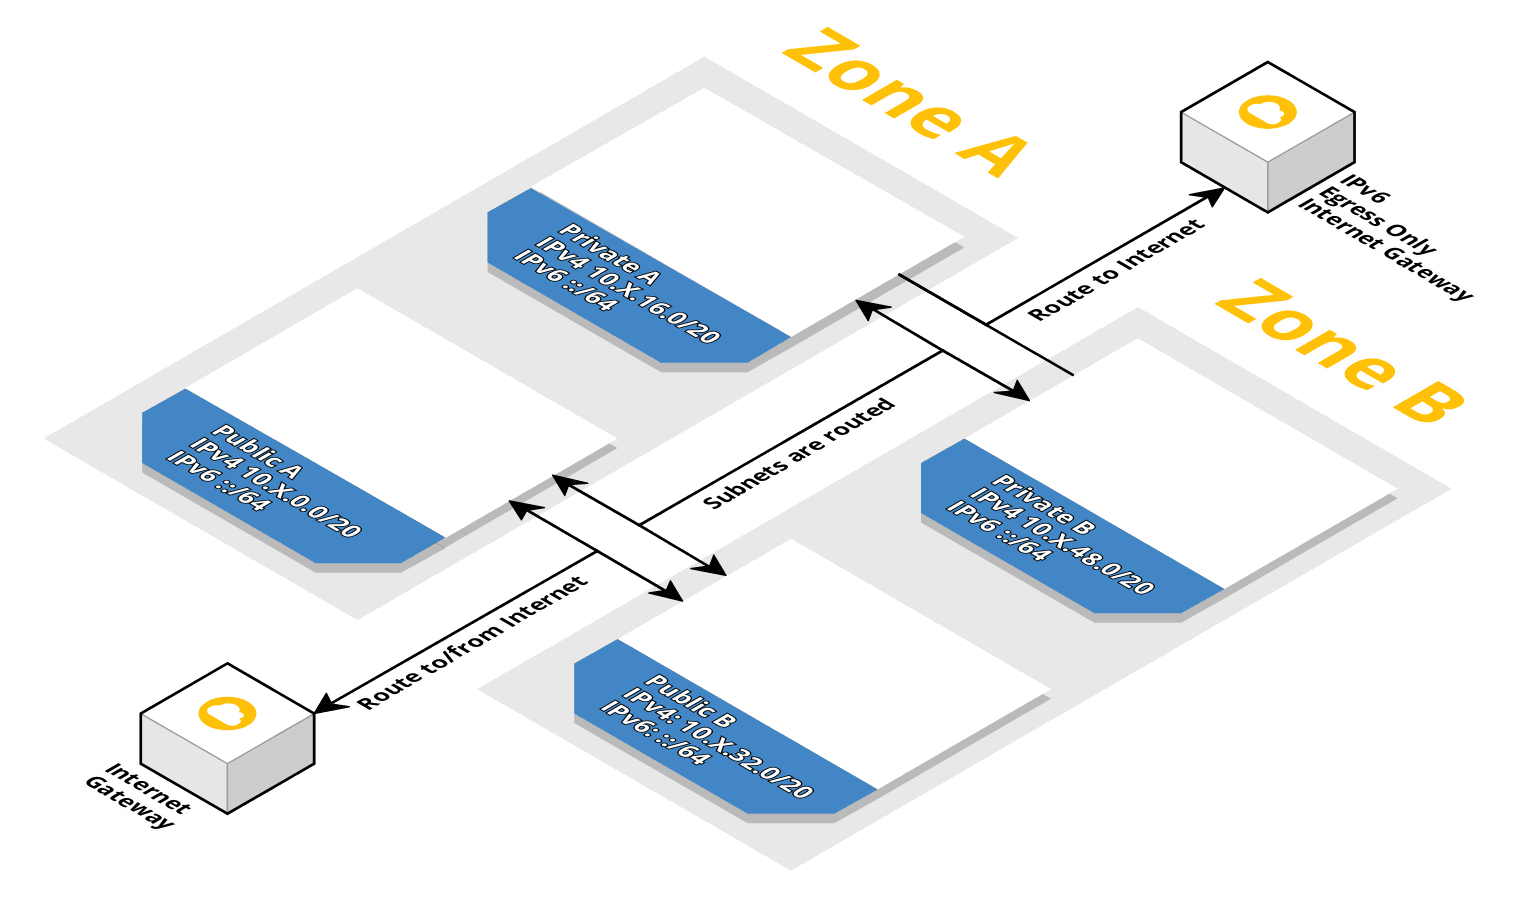 Example architecture diagram